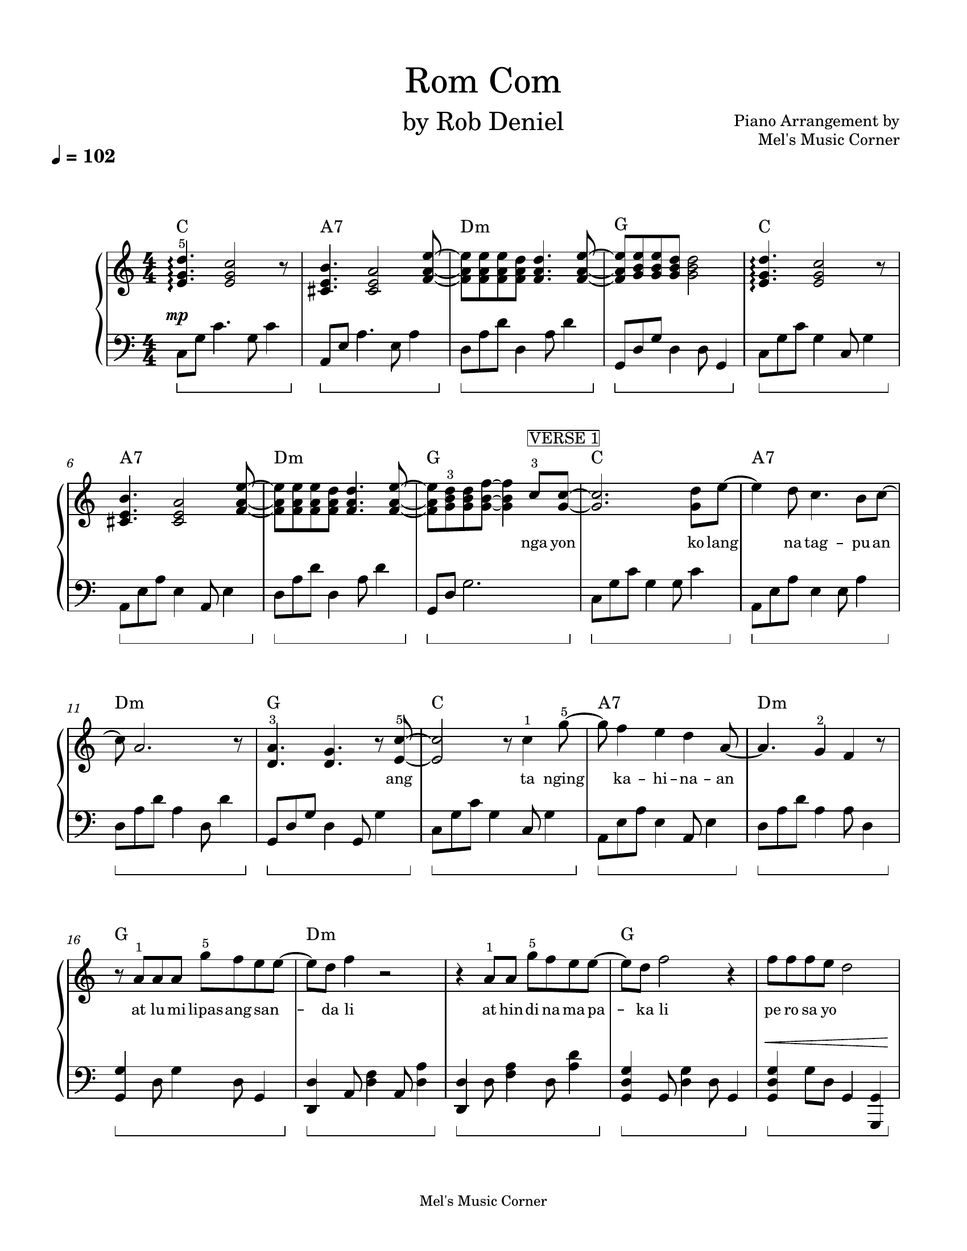 Rob Deniel - Rom Com (piano sheet music) by Mel's Music Corner